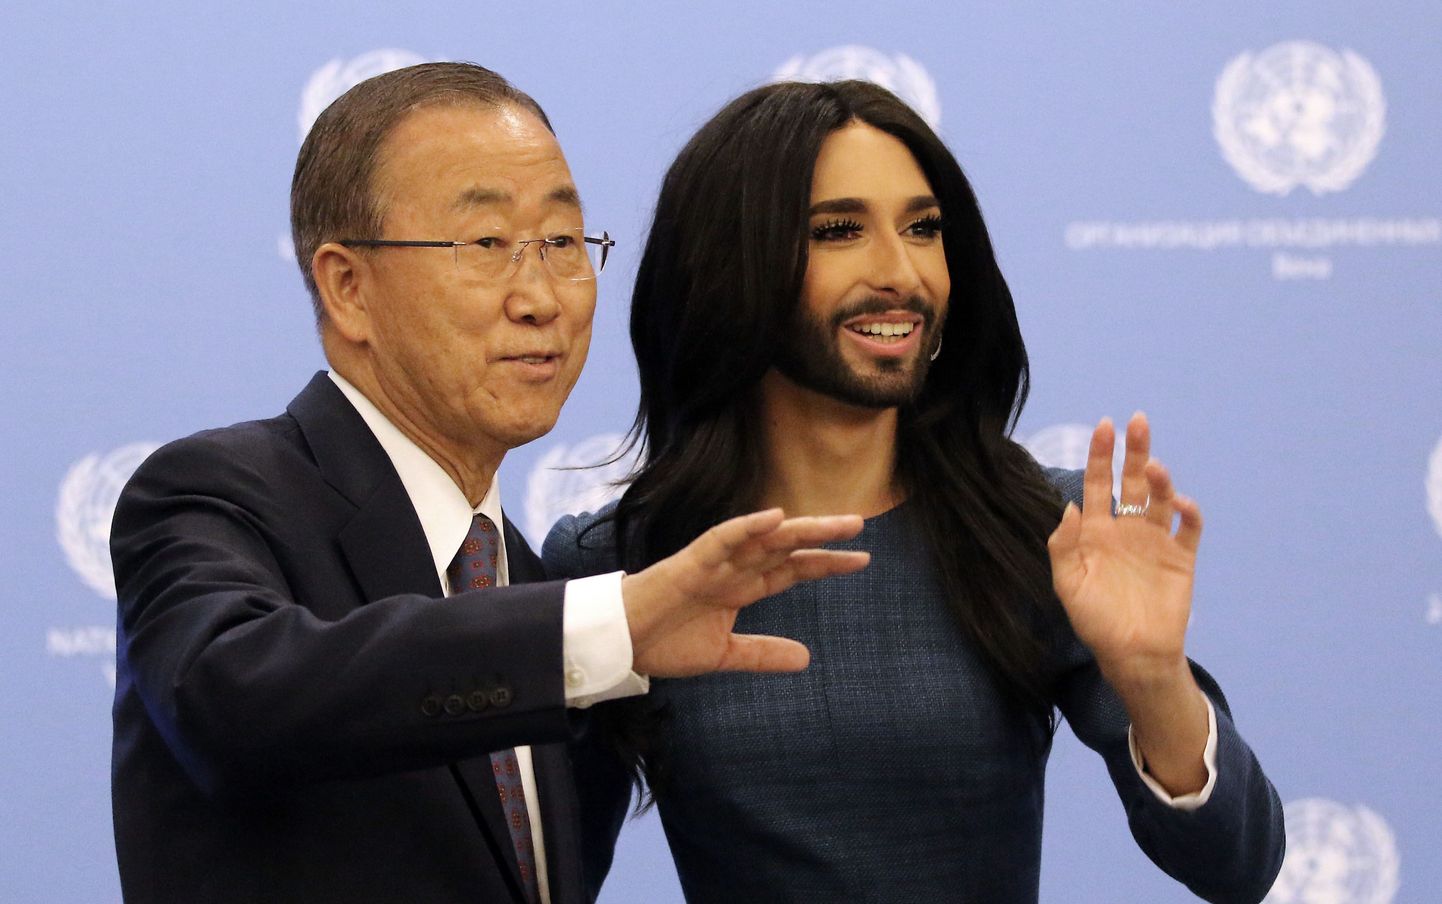 ÜRO peasekretär Ban Ki-moon Eurovisiooni võitja Conchita Wurst esinesid ühisavaldusega.